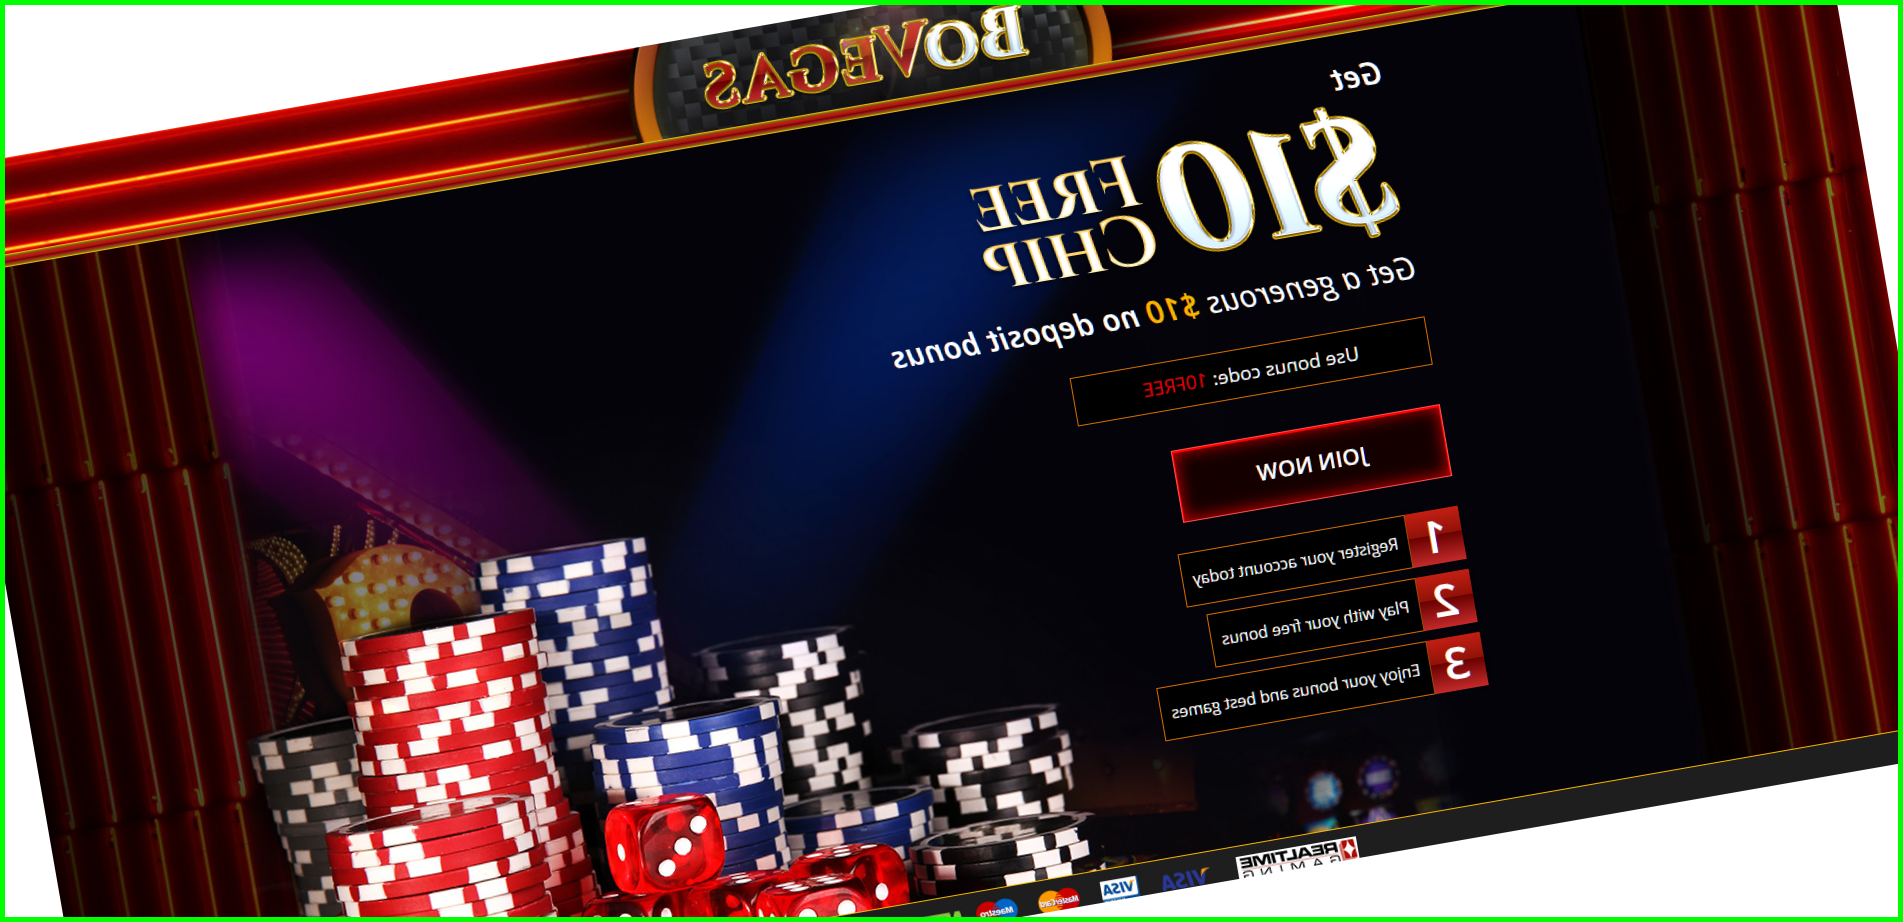 italy online casino